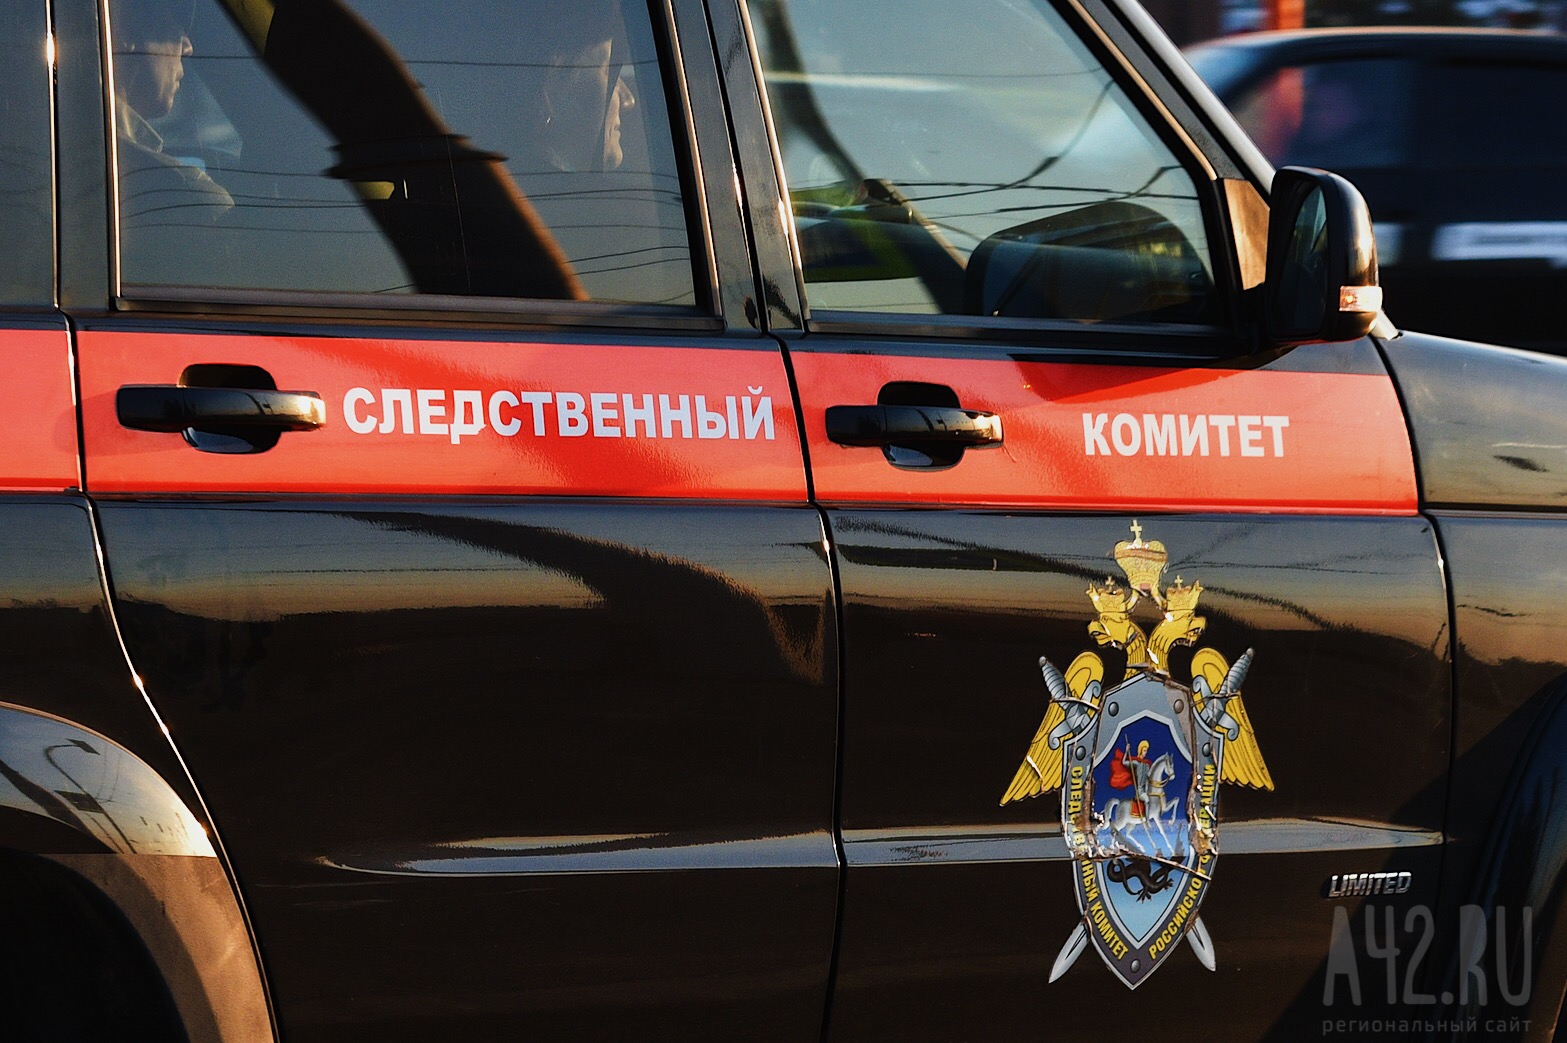 В Омске таксист похитил девушку, продававшую иномарку, и удерживал её в гараже